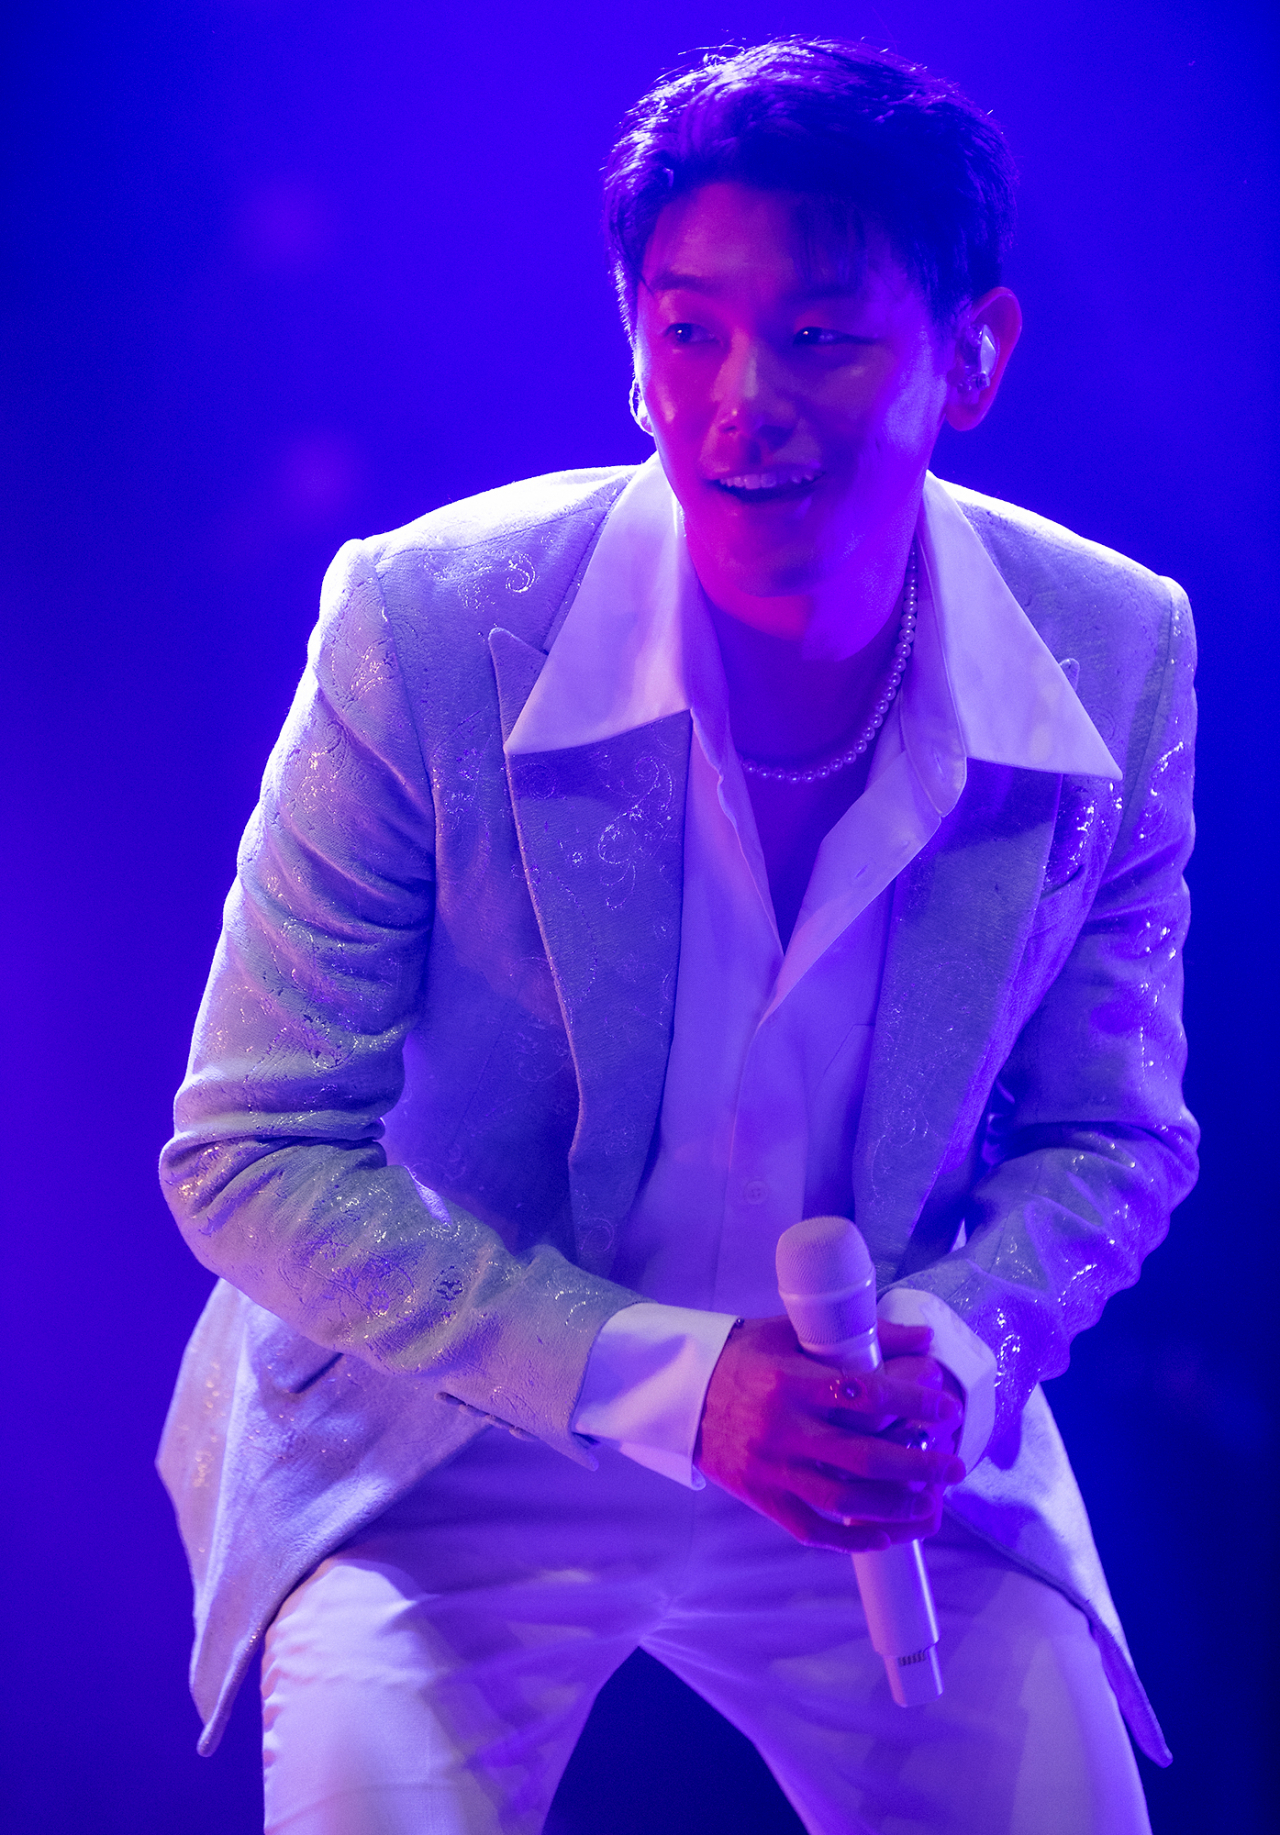 에릭남이 1일 서울 광진구 예스24 라이브홀에서 월드투어 콘서트를 열고 있다.  (라이브네이션코리아)